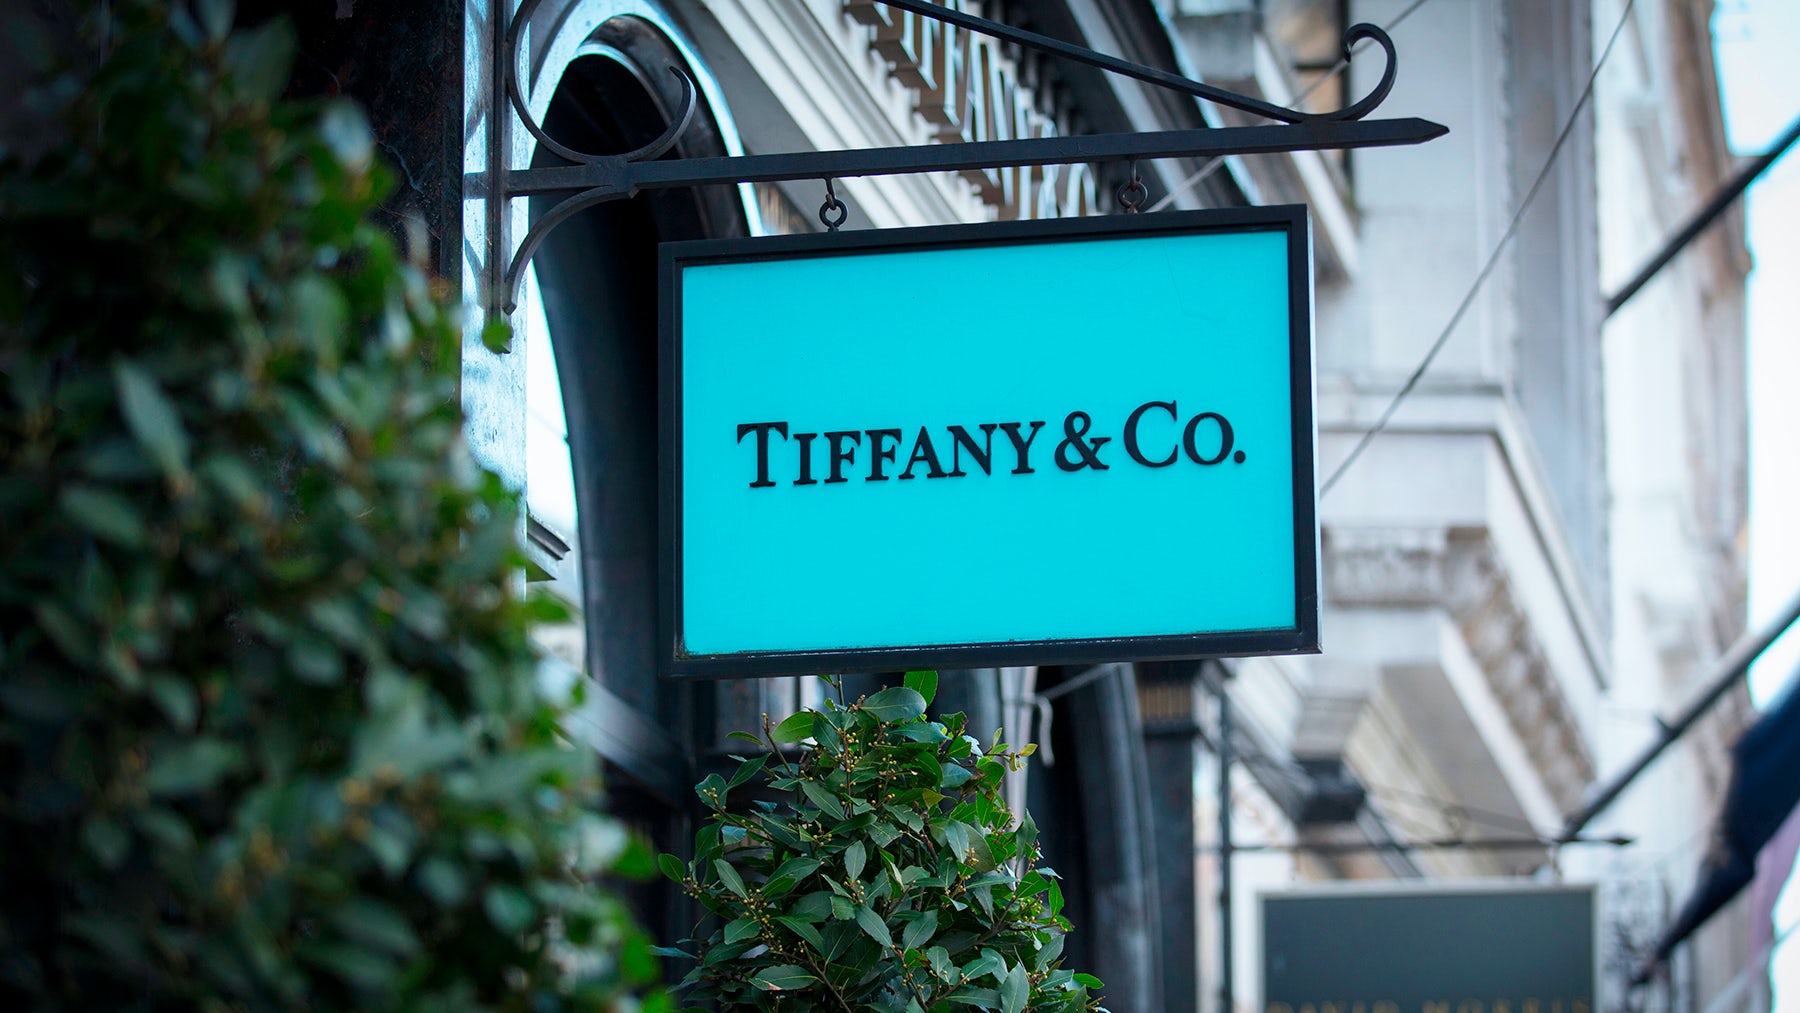 Why the new LVMH-Tiffany deal makes sense